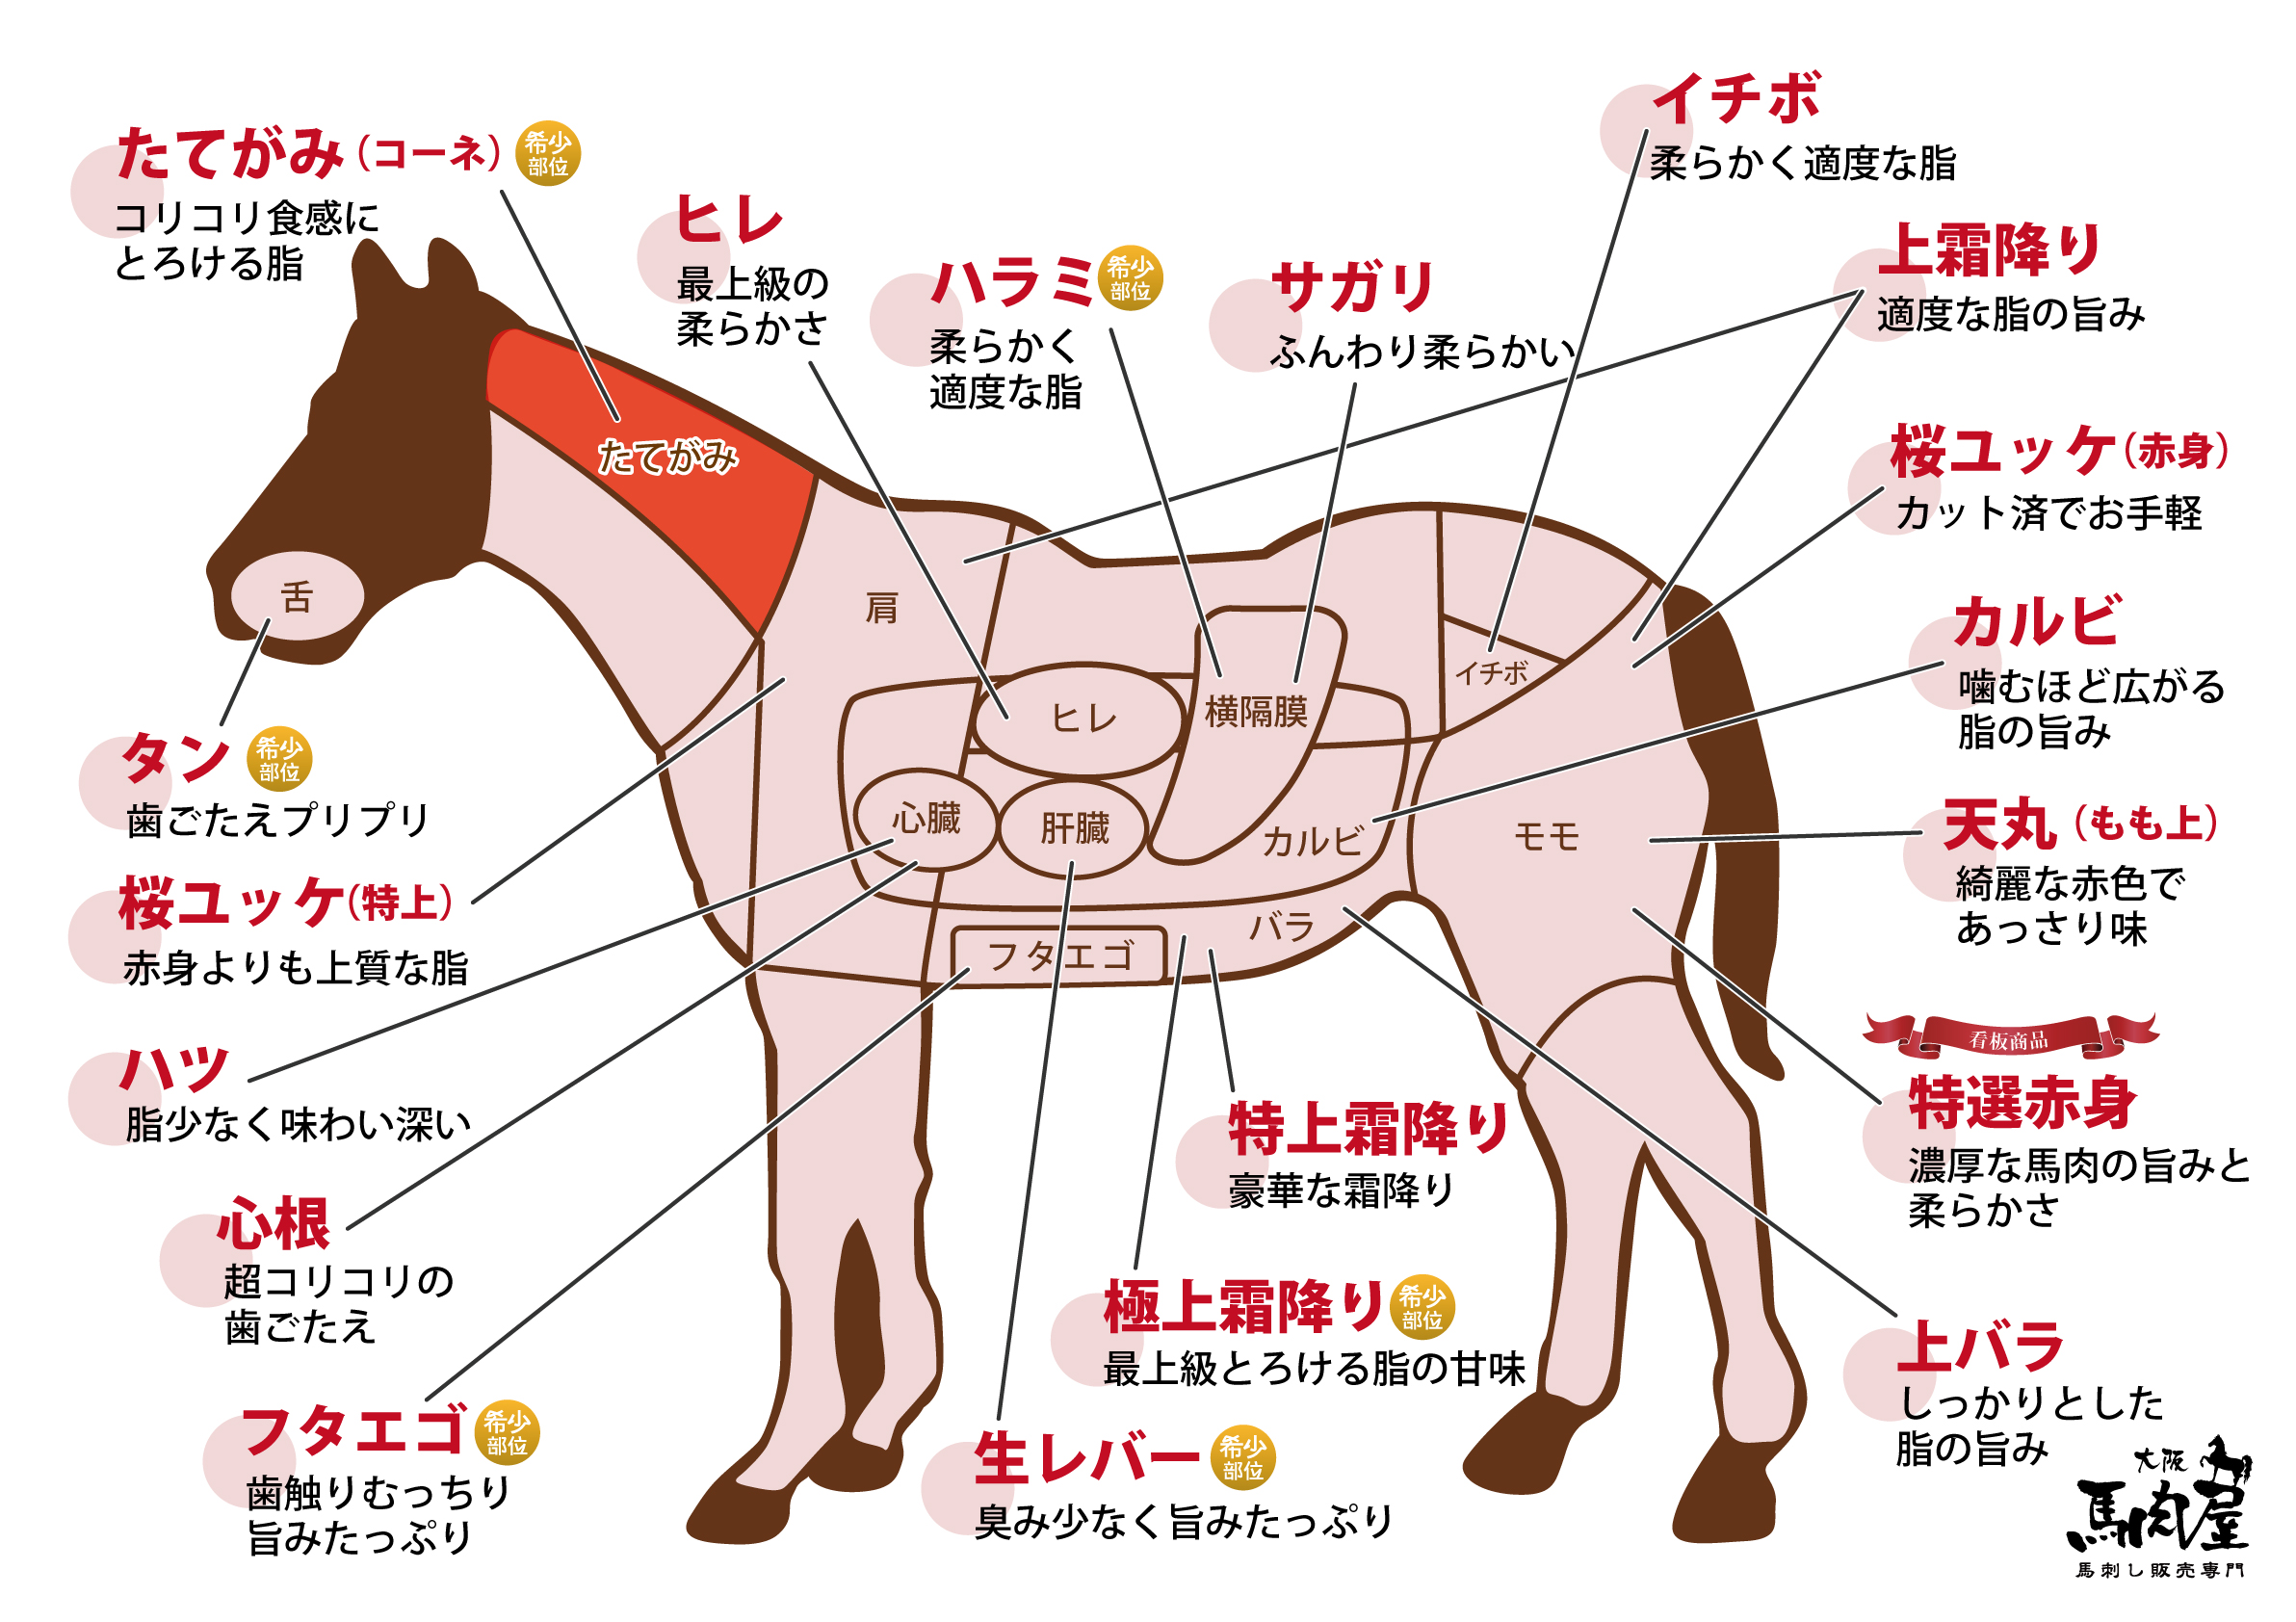 A1_馬部位図_たてがみ.jpg